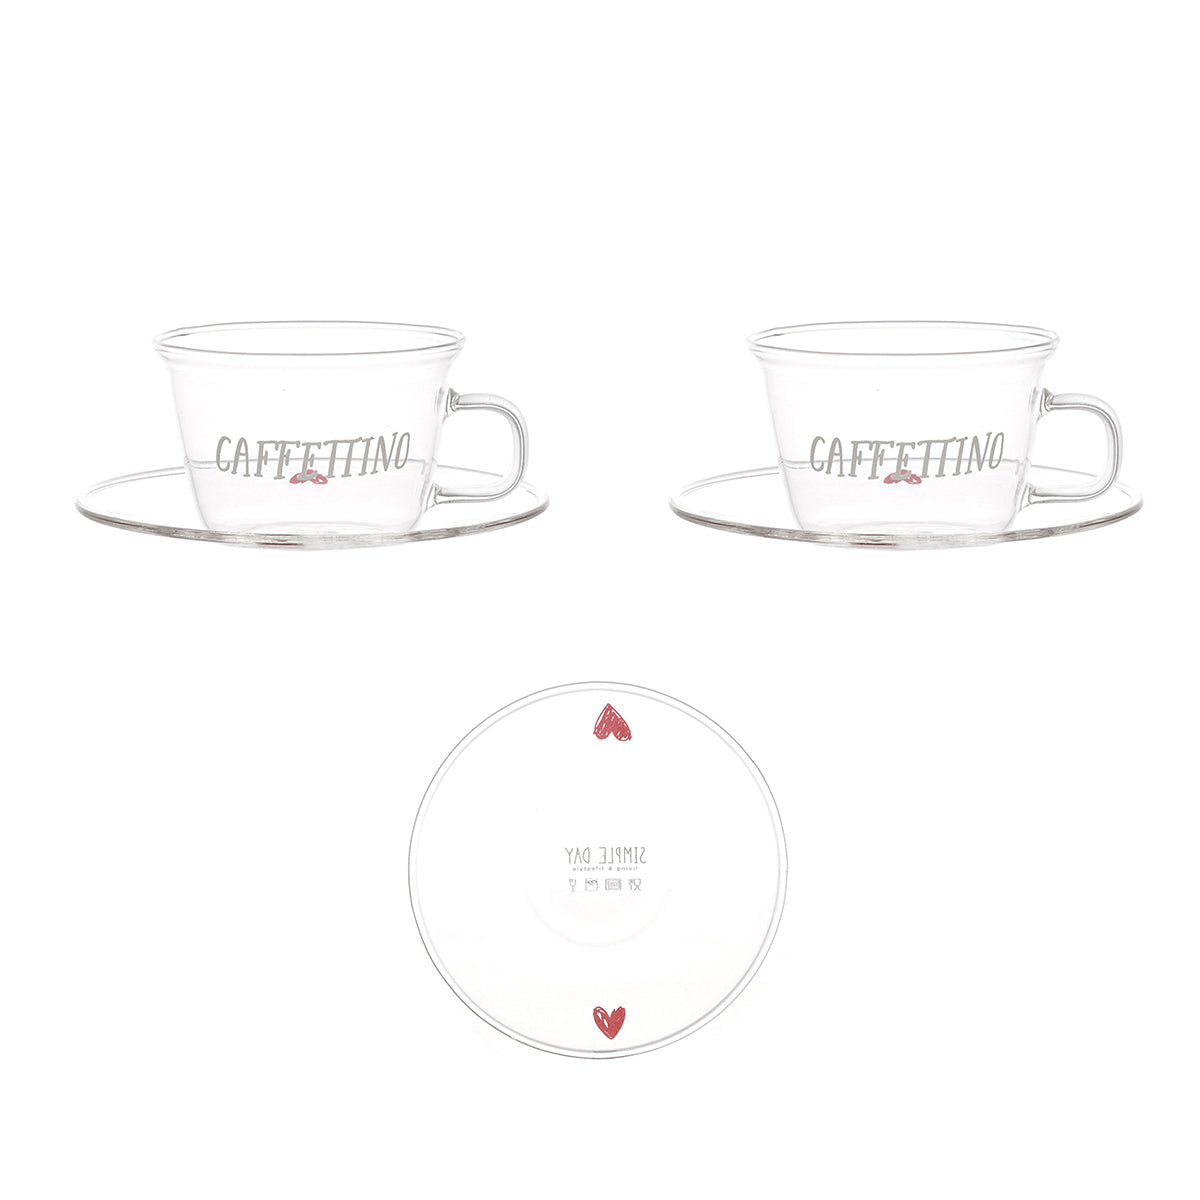 Caffettino rote Herzen 2 Espressotasse und Untertasse Set